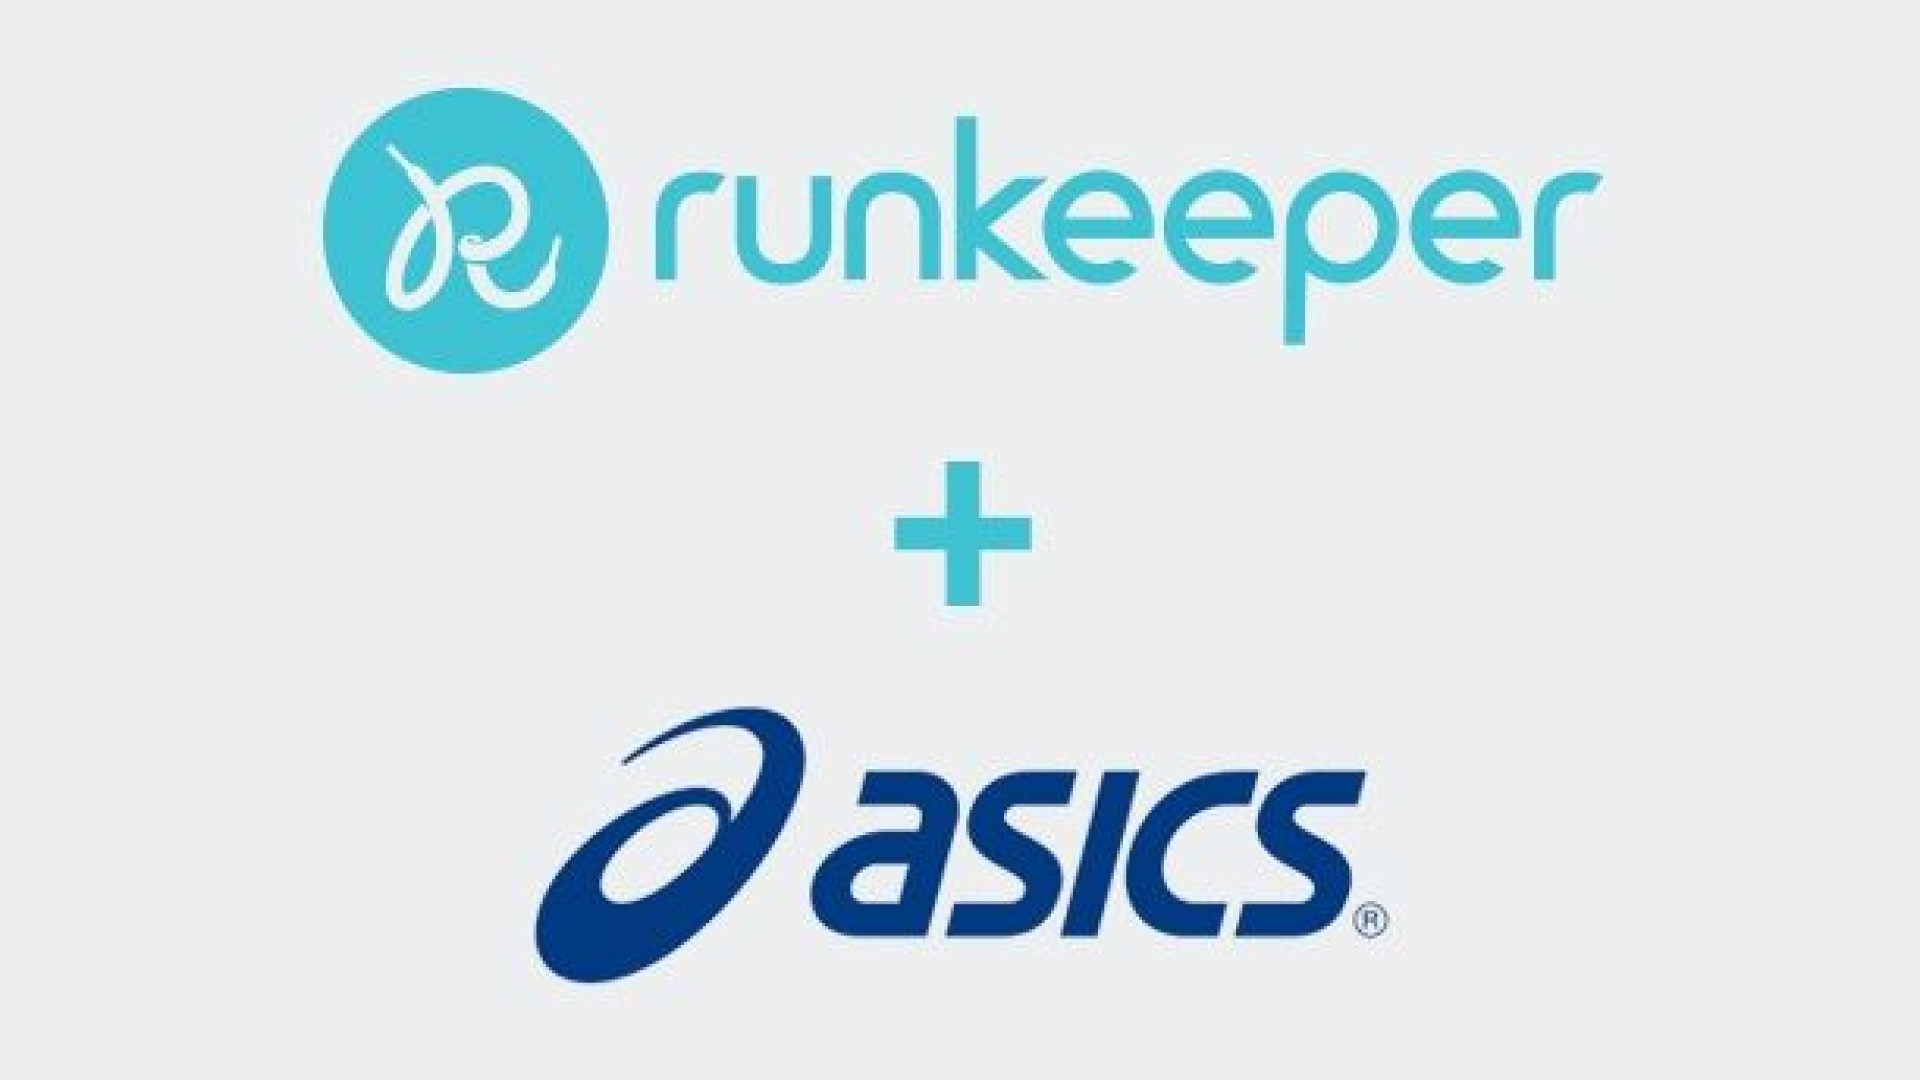 Aplicativo Runkeeper é vendido à marca de calçados Asics